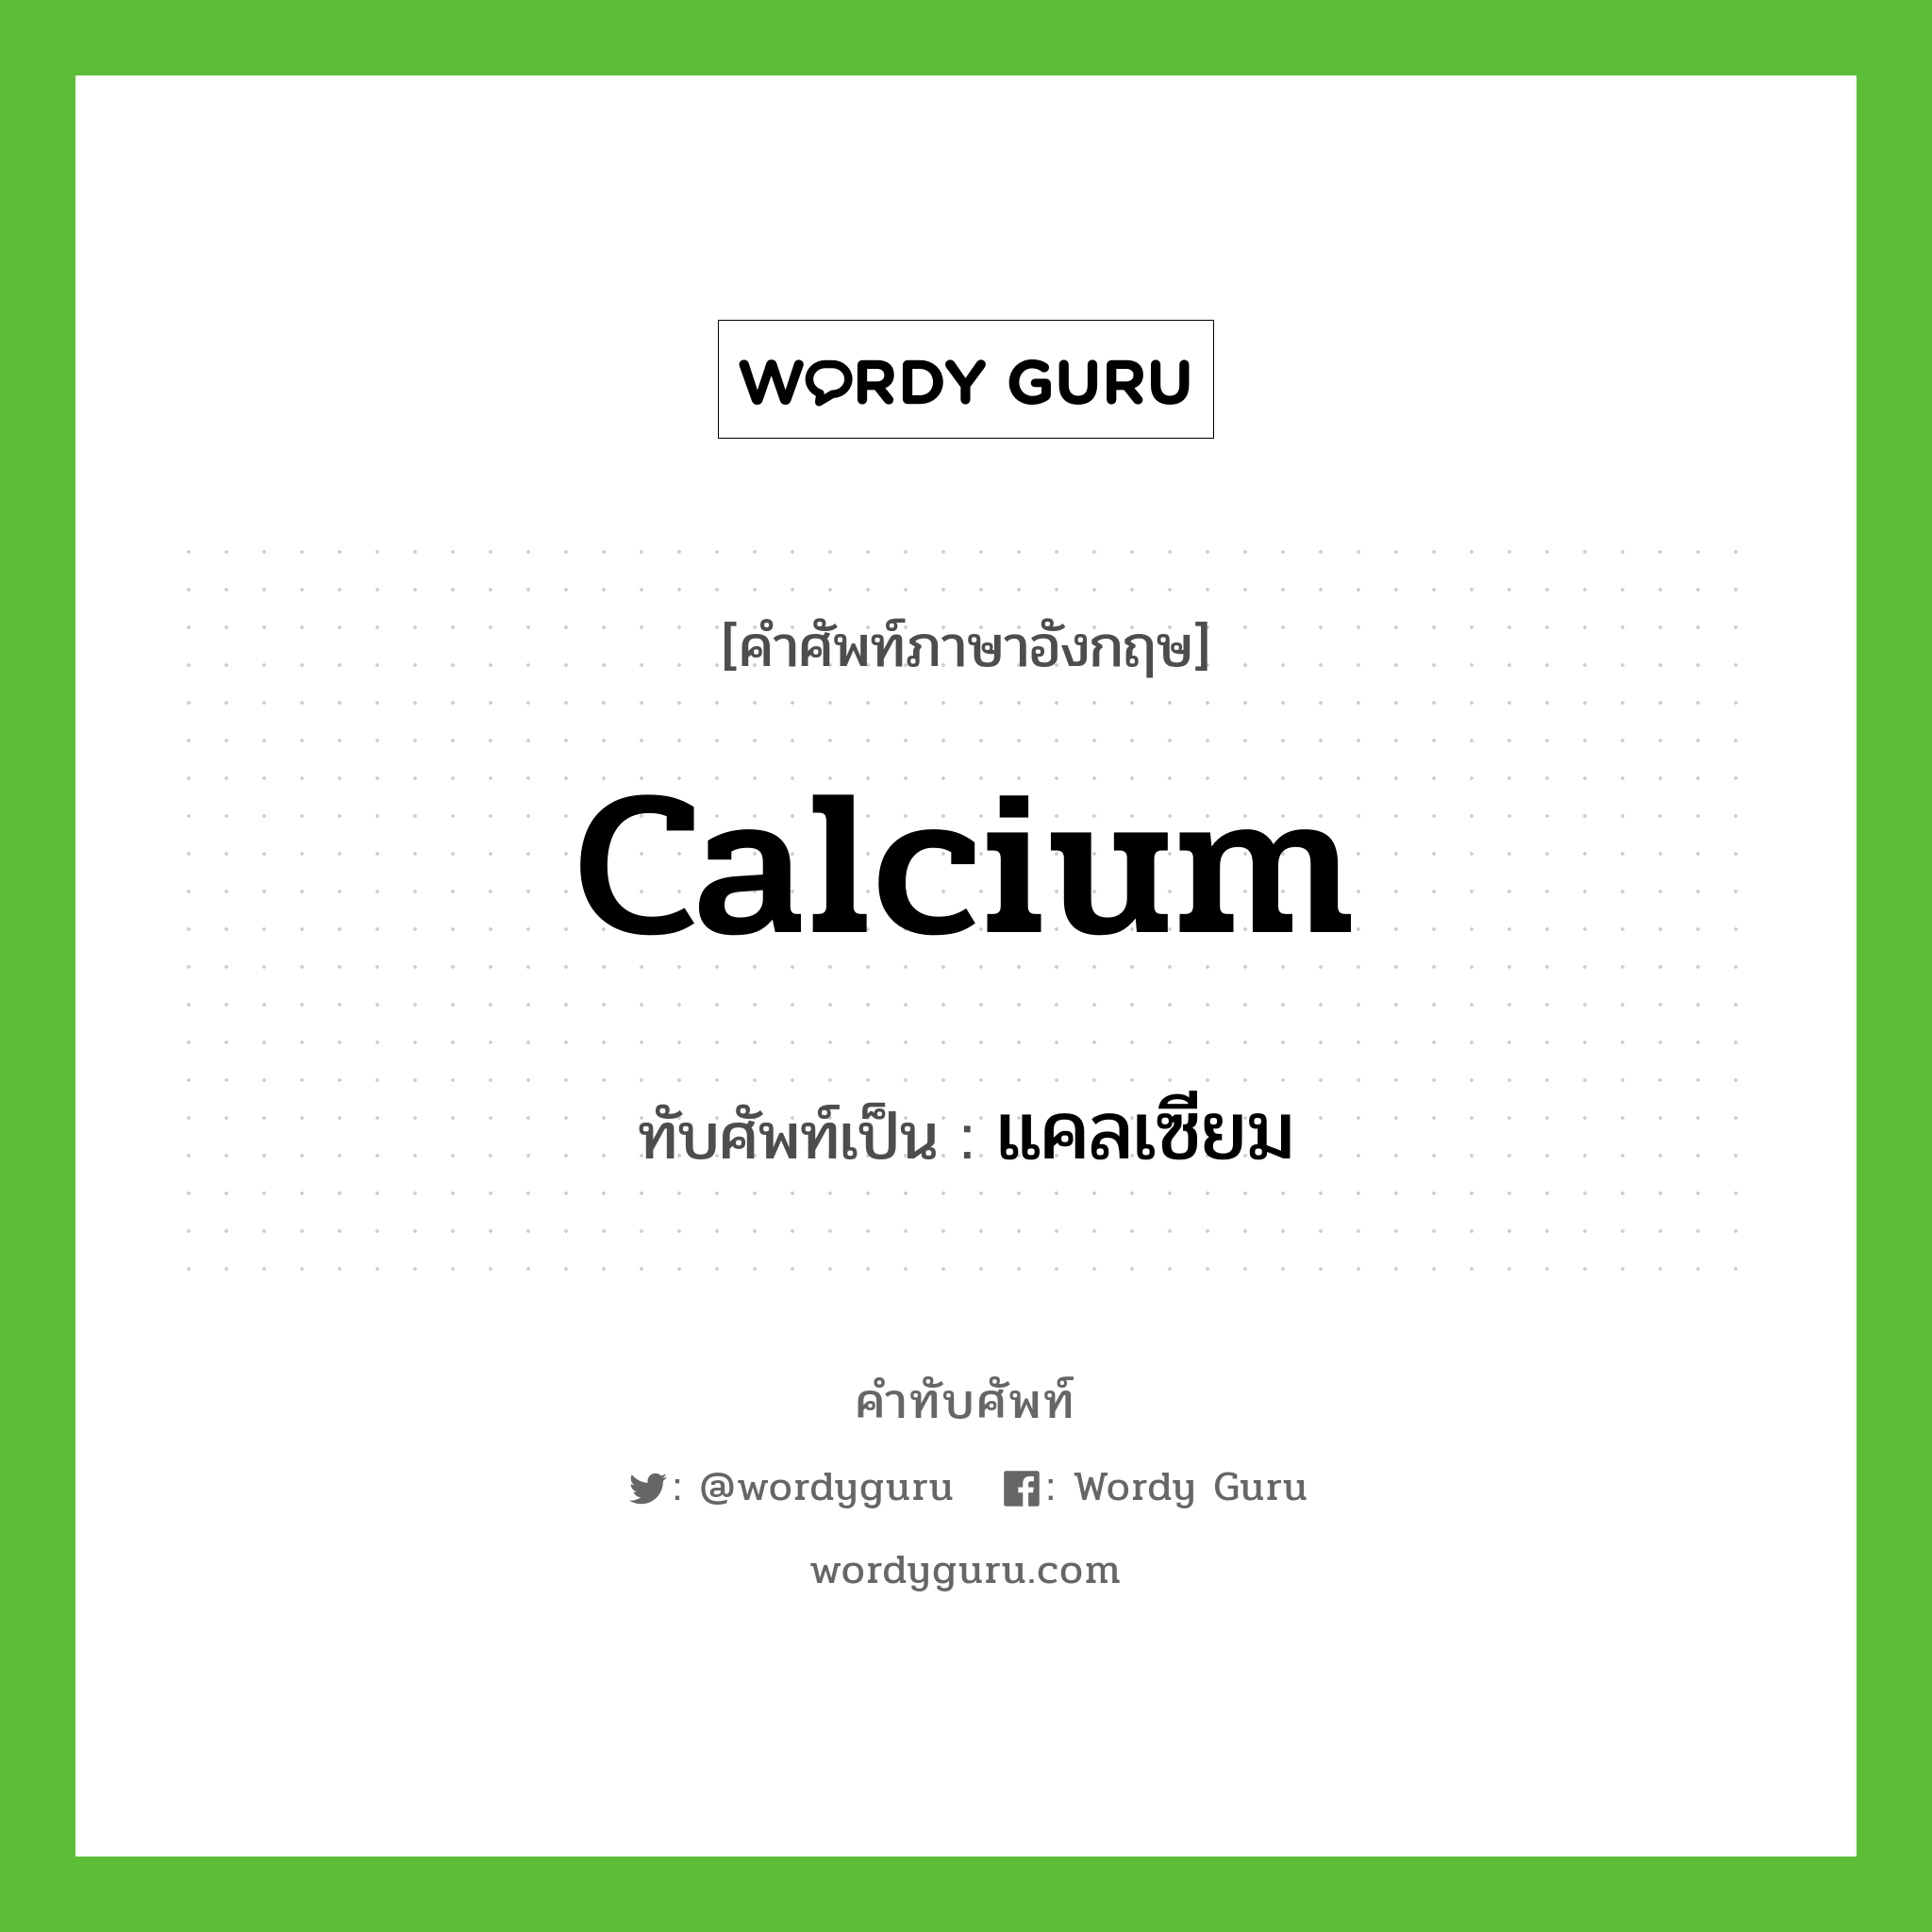 calcium เขียนเป็นคำไทยว่าอะไร?, คำศัพท์ภาษาอังกฤษ calcium ทับศัพท์เป็น แคลเซียม